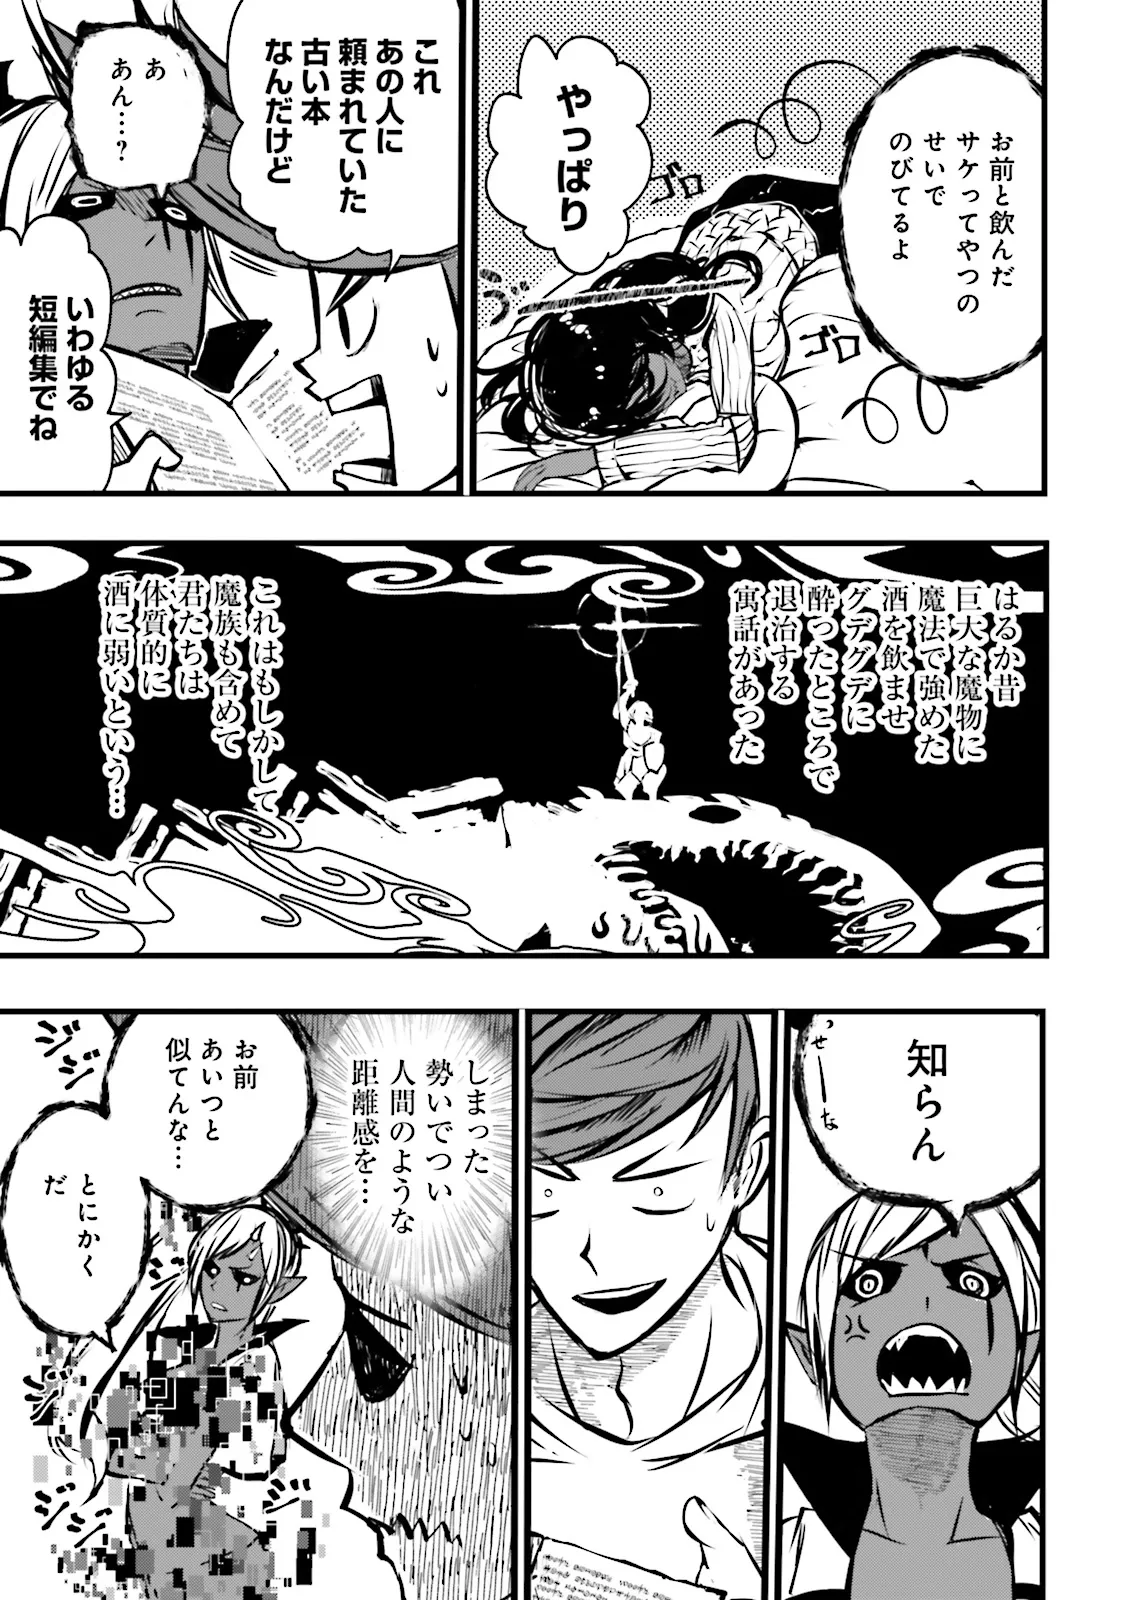 Sukiru Ga Nakereba Level wo Ageru ~ 99 Ga Kansuto No Sekai De Reberu 800 Man Kara Sutato ~ - Chapter 39.3 - Page 3